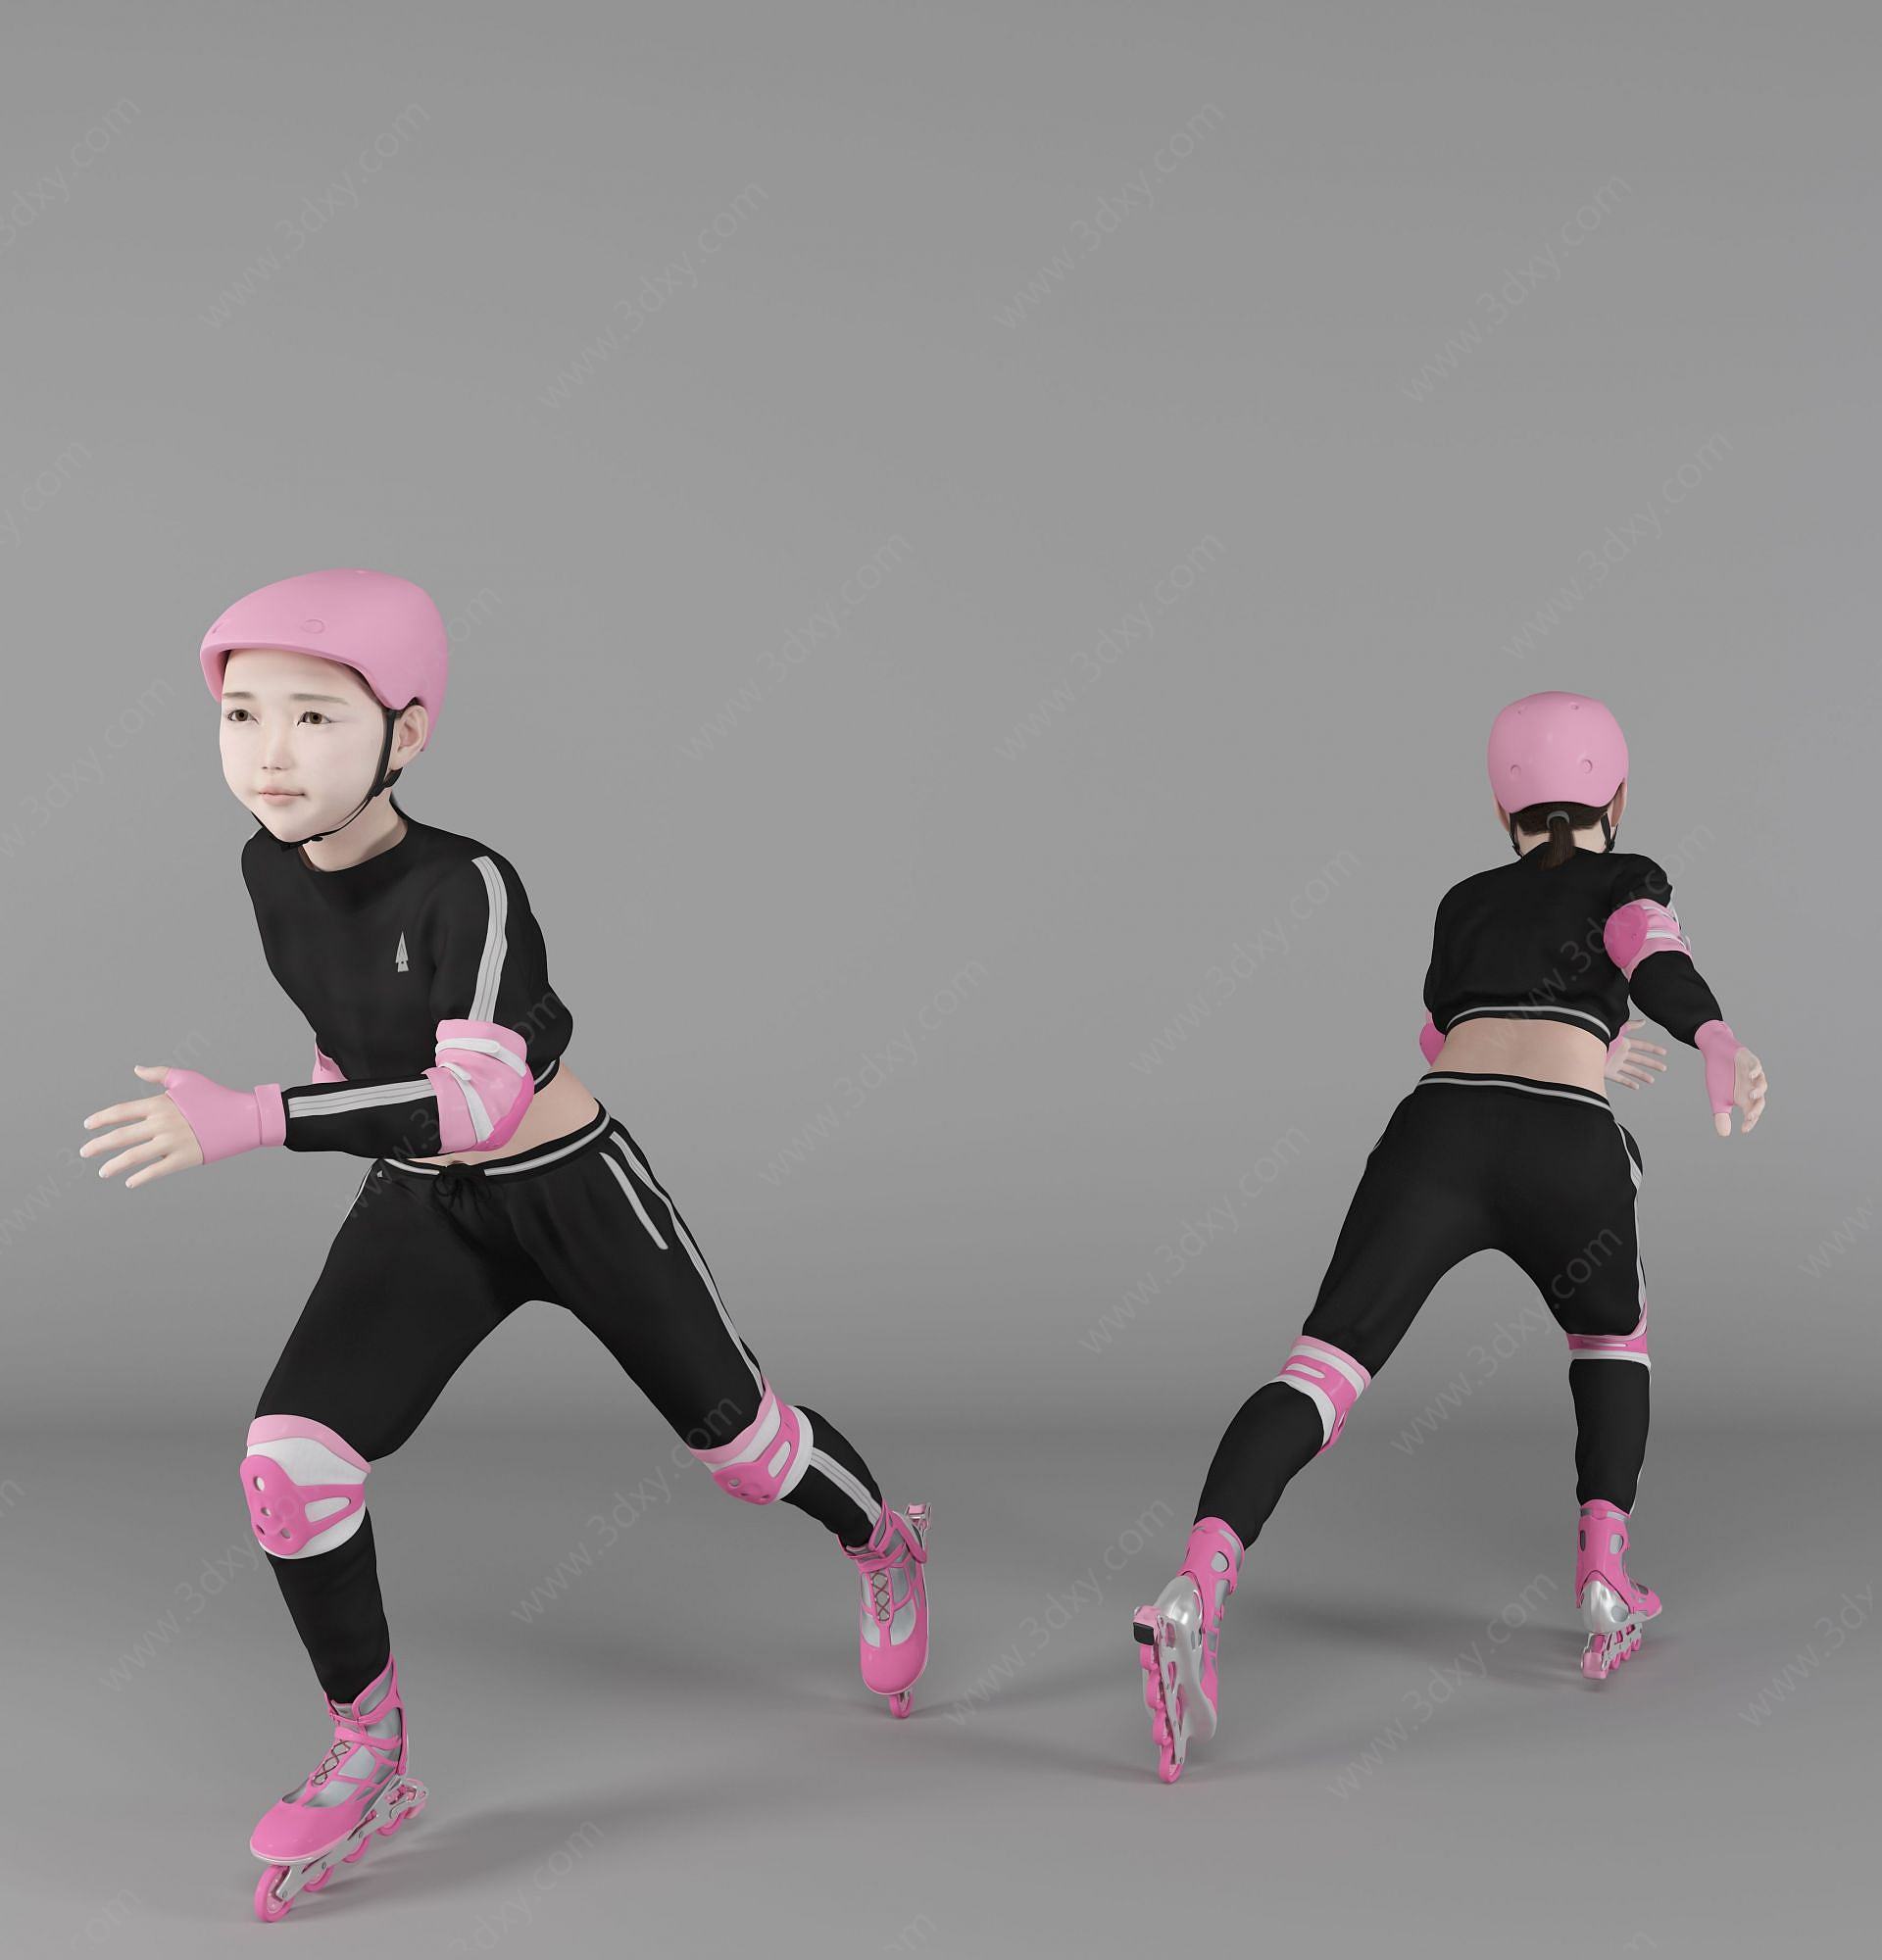 现代风格溜冰儿童人物3D模型